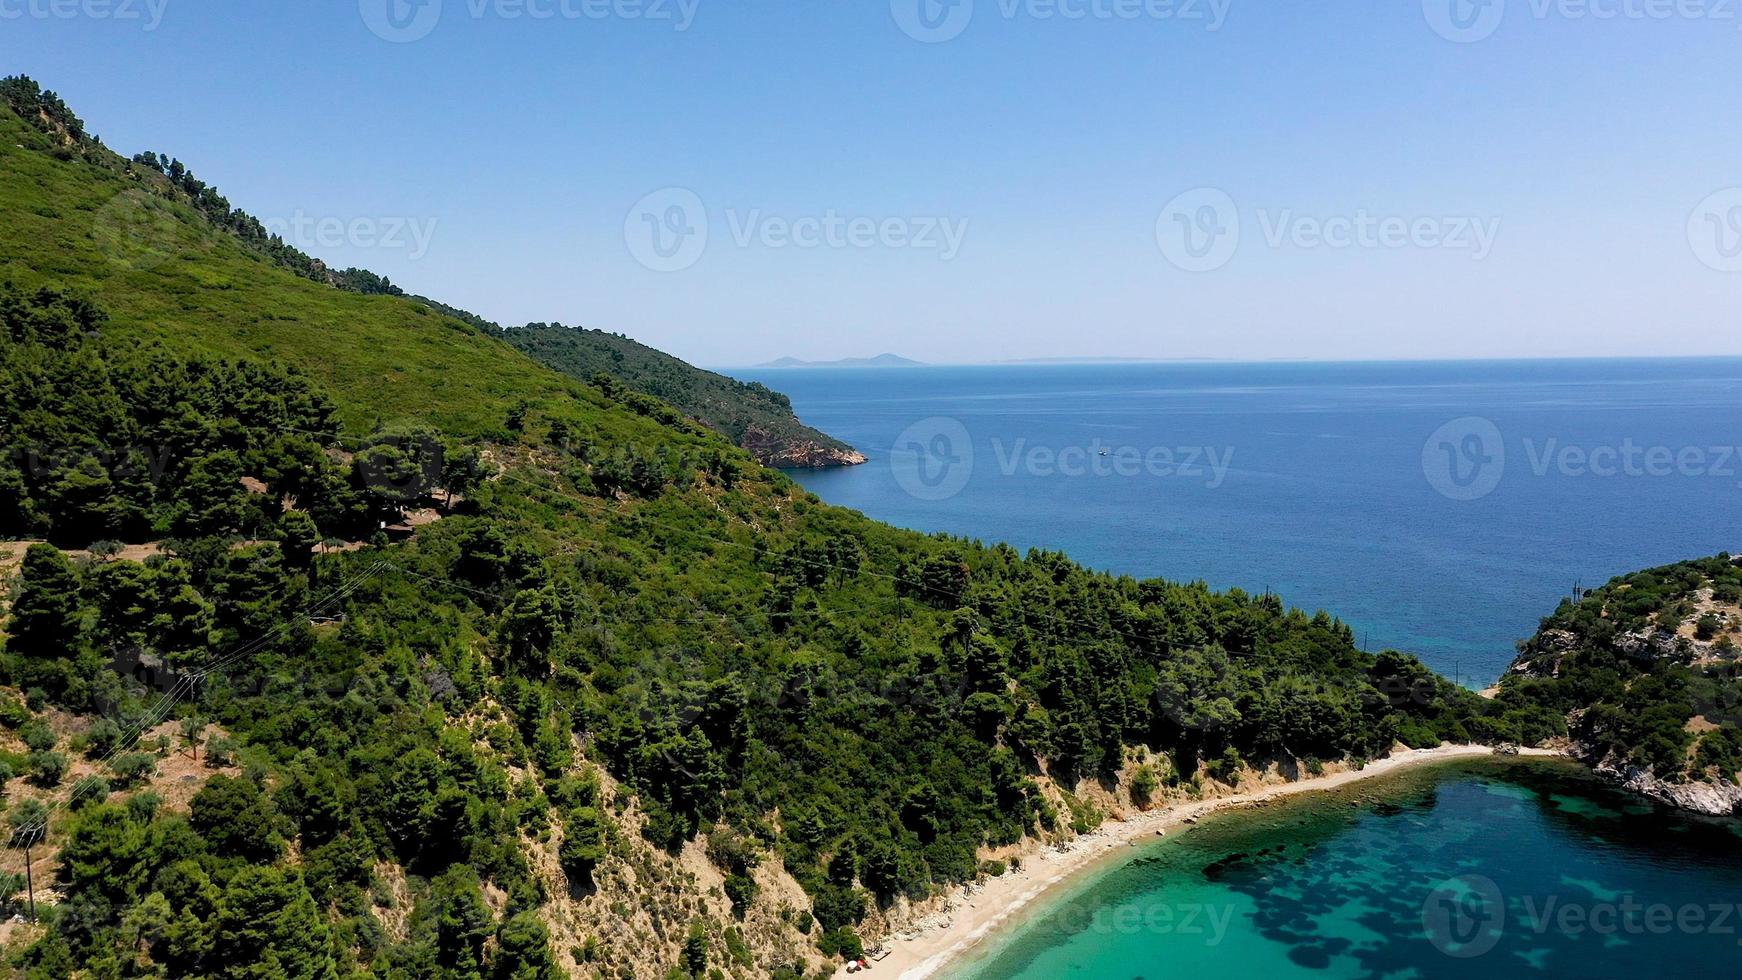 viste aeree dei droni su una costa rocciosa, acque cristalline del Mar Egeo, spiagge turistiche e tanto verde nell'isola di Skopelos, in Grecia. una vista tipica di molte isole greche simili. foto